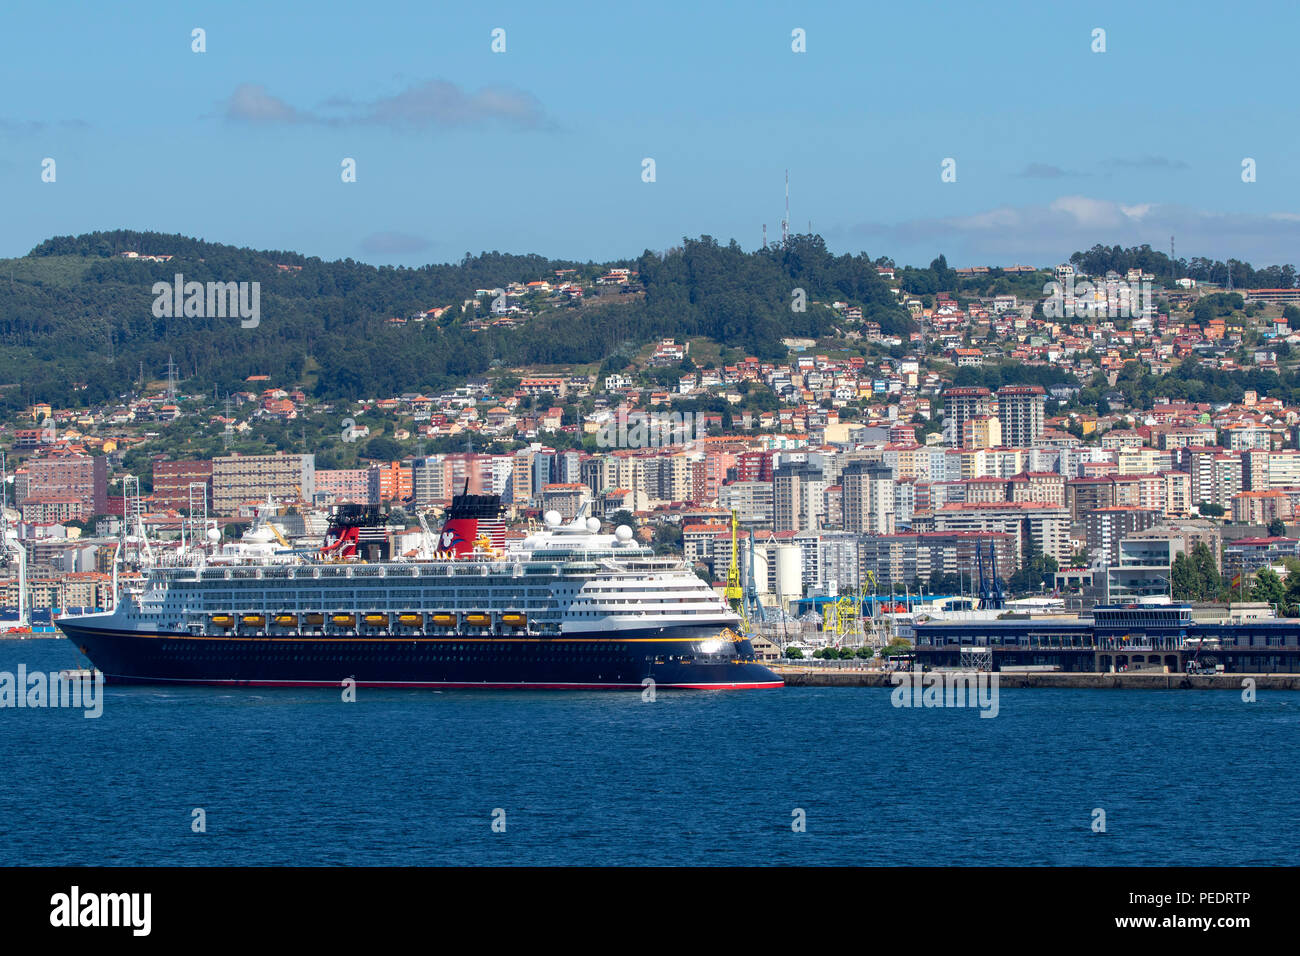 Disney Magic cruise ship besessen und durch die Disney Cruise Line betrieben angedockt in Vigo Spanien Stockfoto